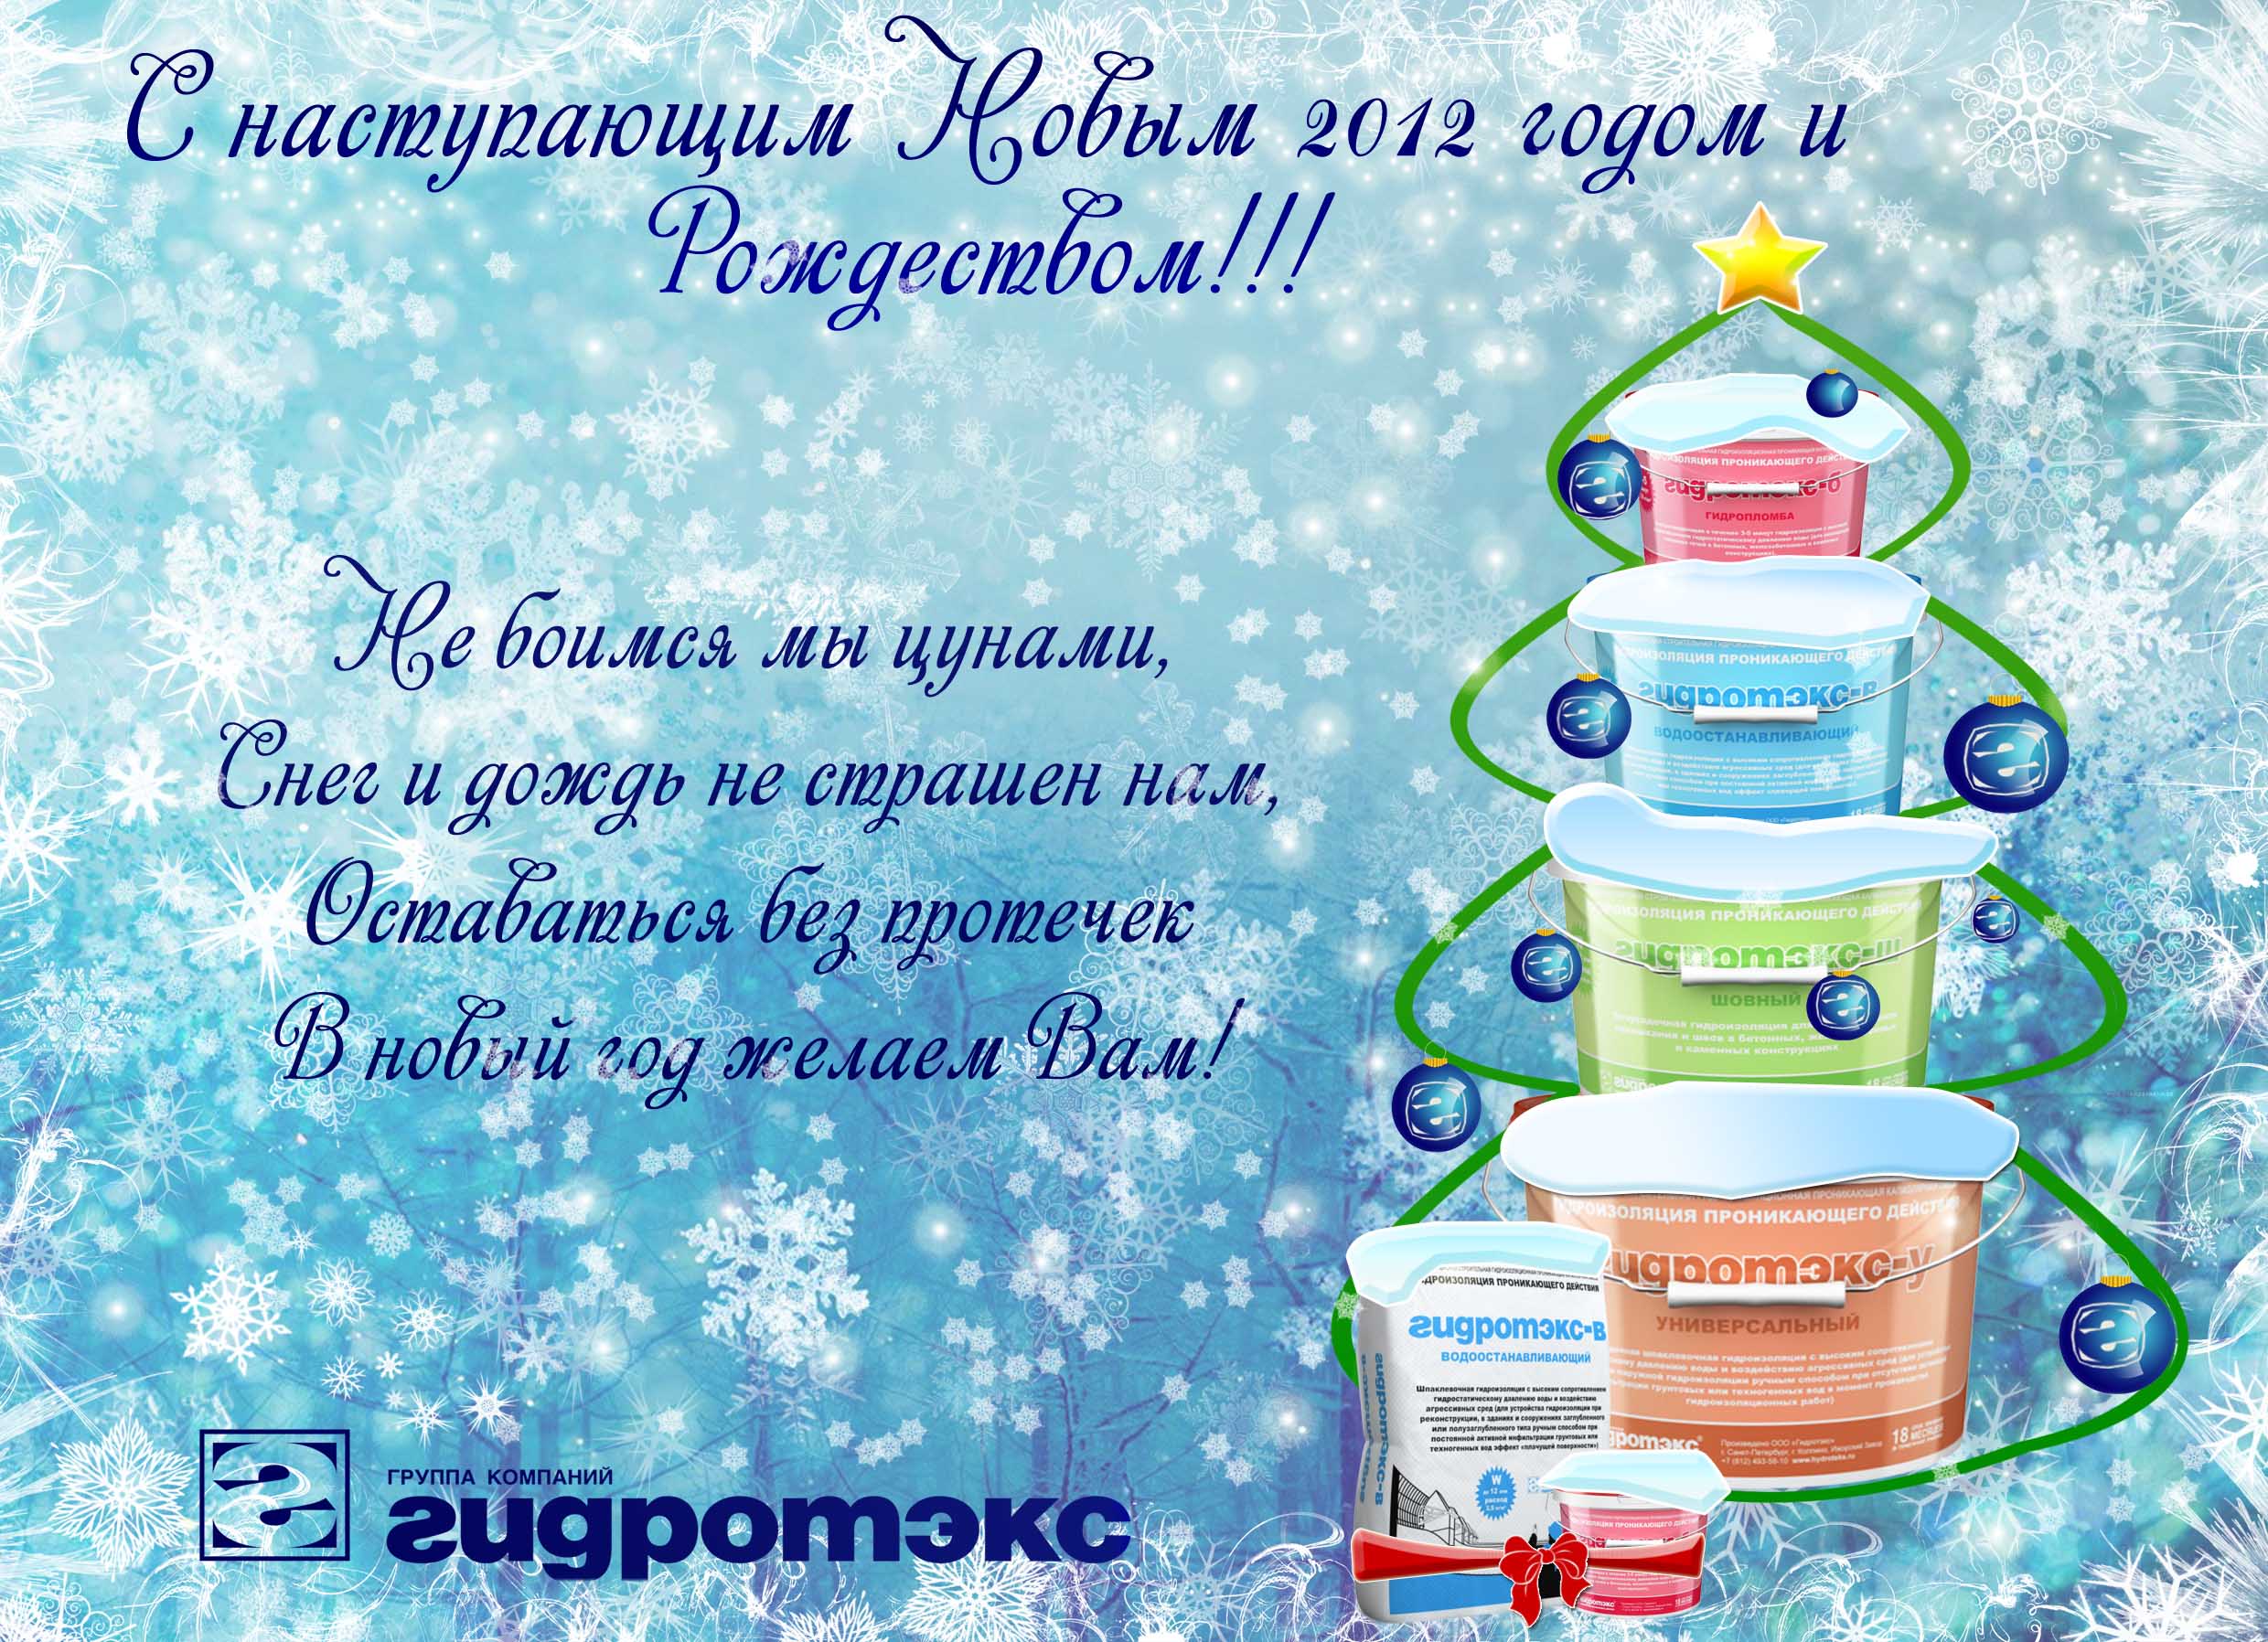 С наступающим Новым 2012 годом и Рождеством!